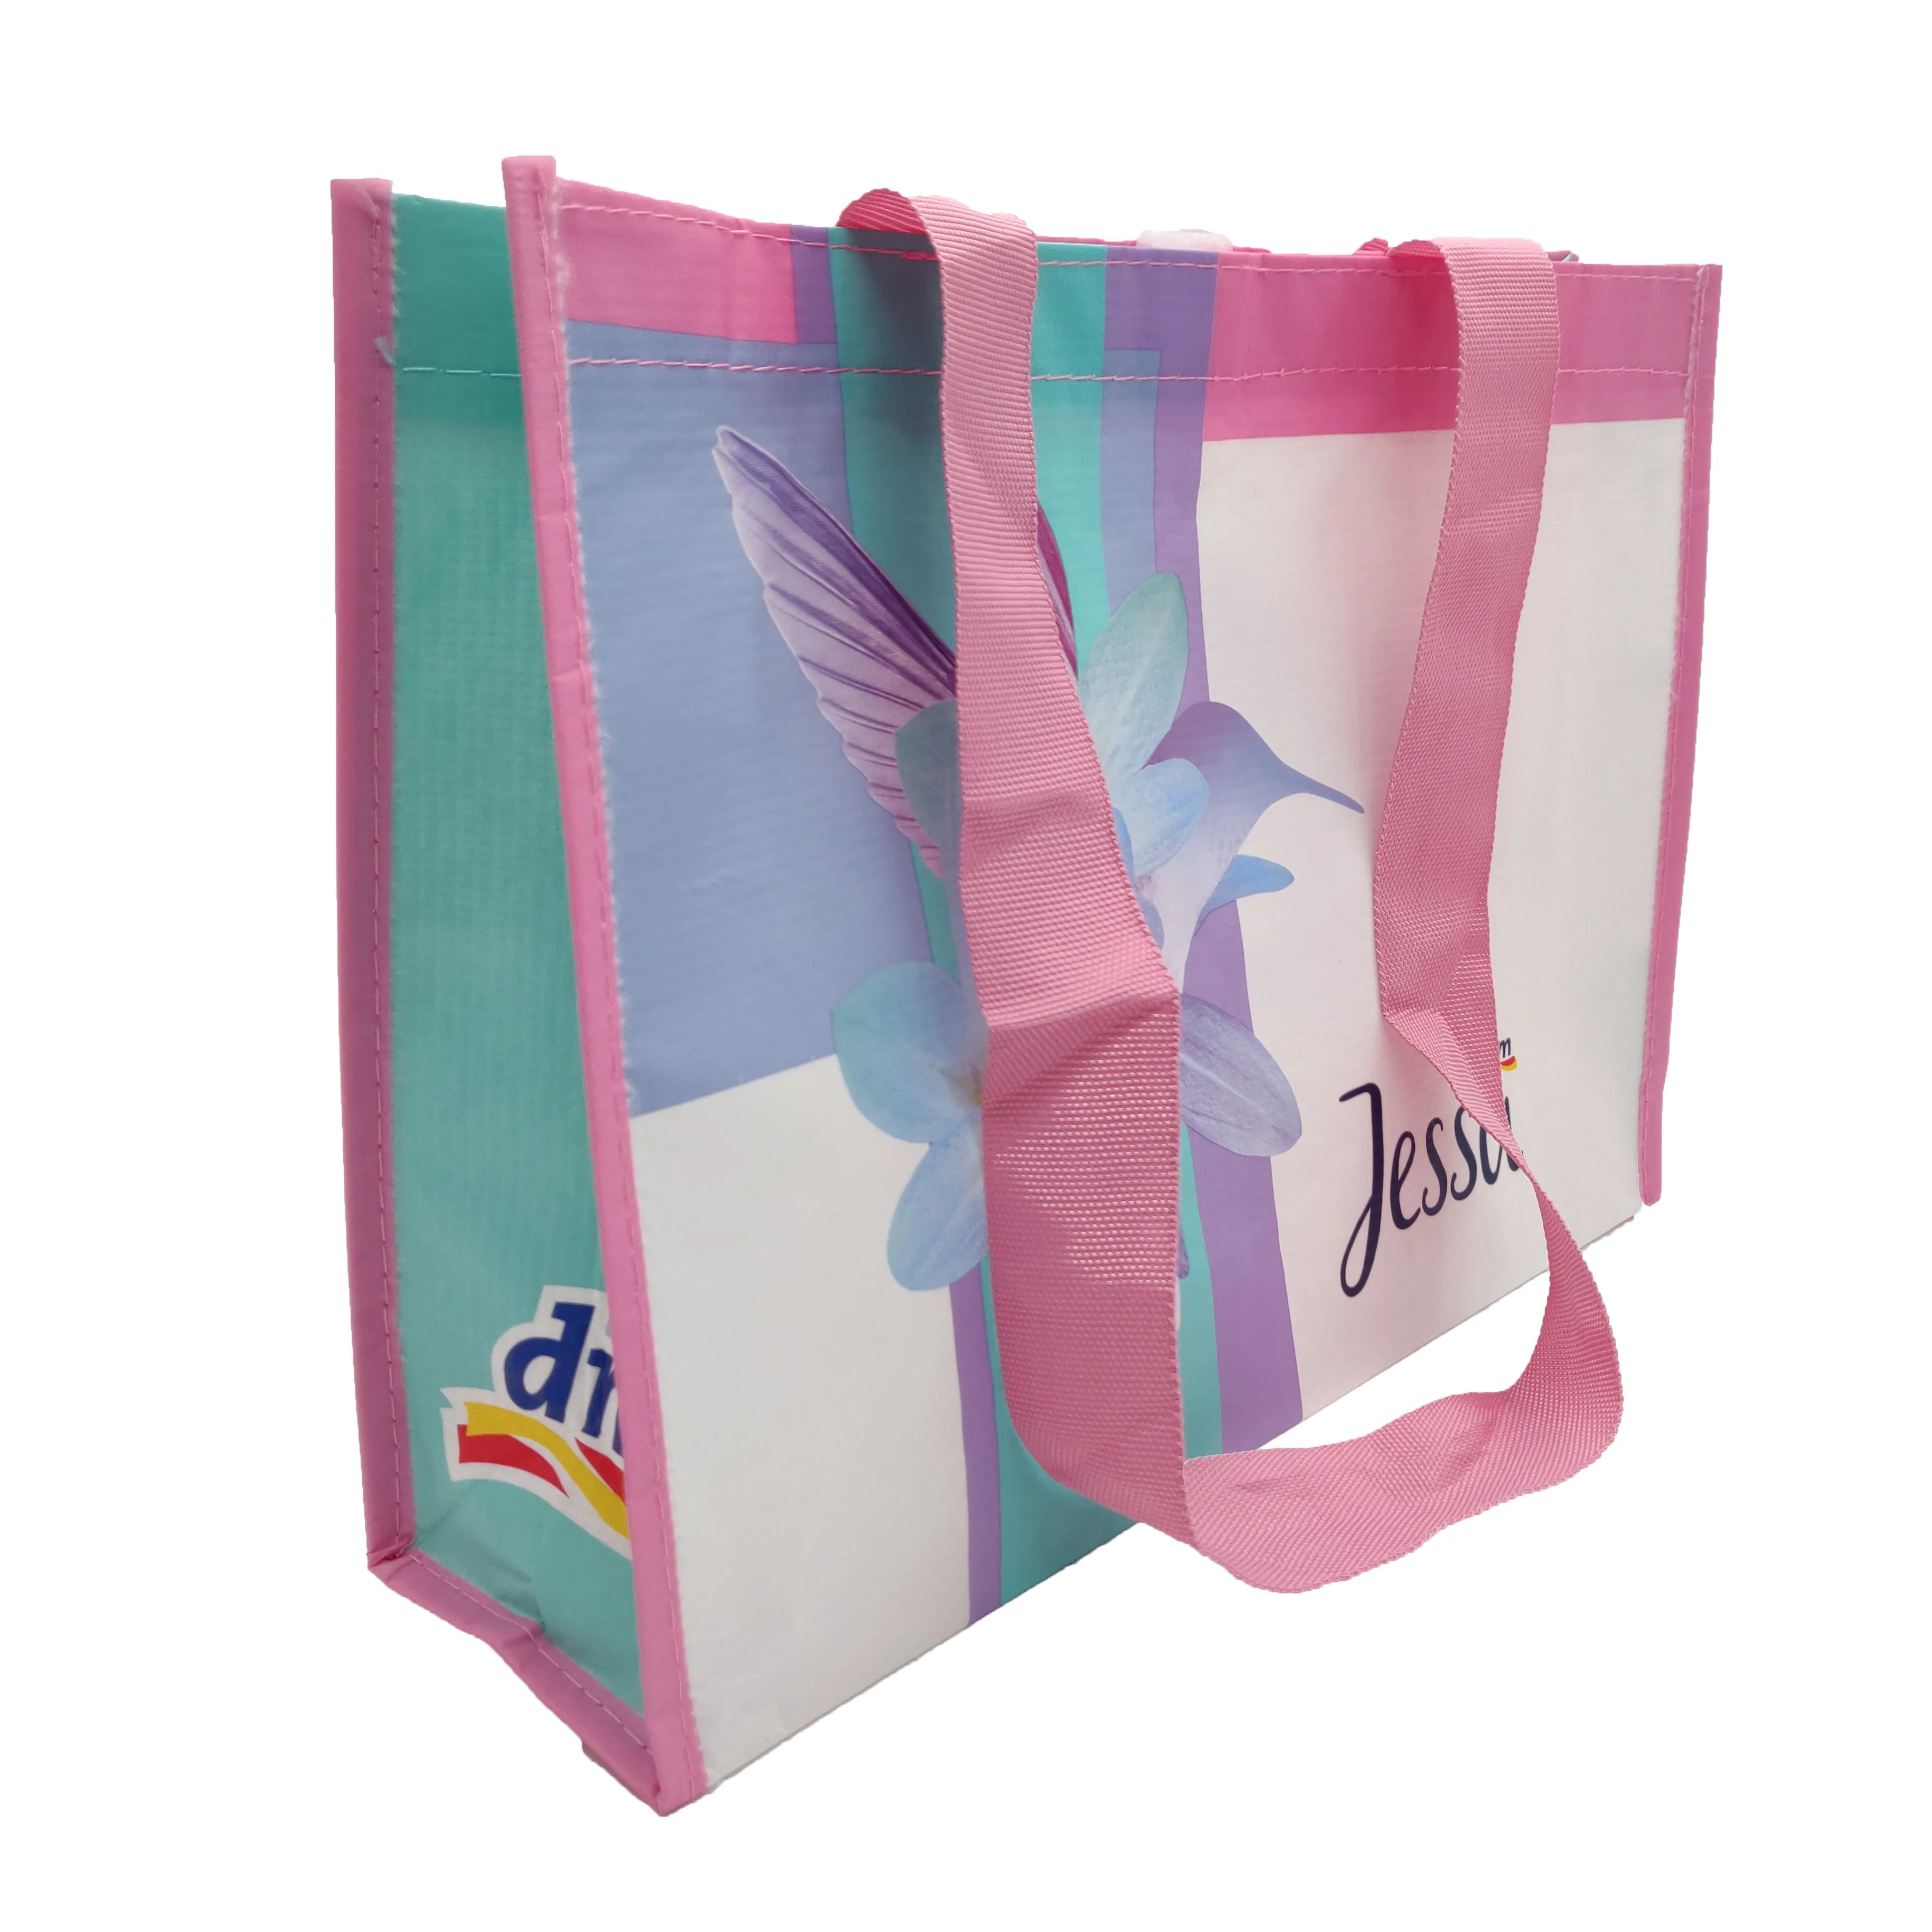 Anti-batterico, BSCI fabbrica campione gratuito eco friendly riutilizzabile riciclaggio pet shopping bag